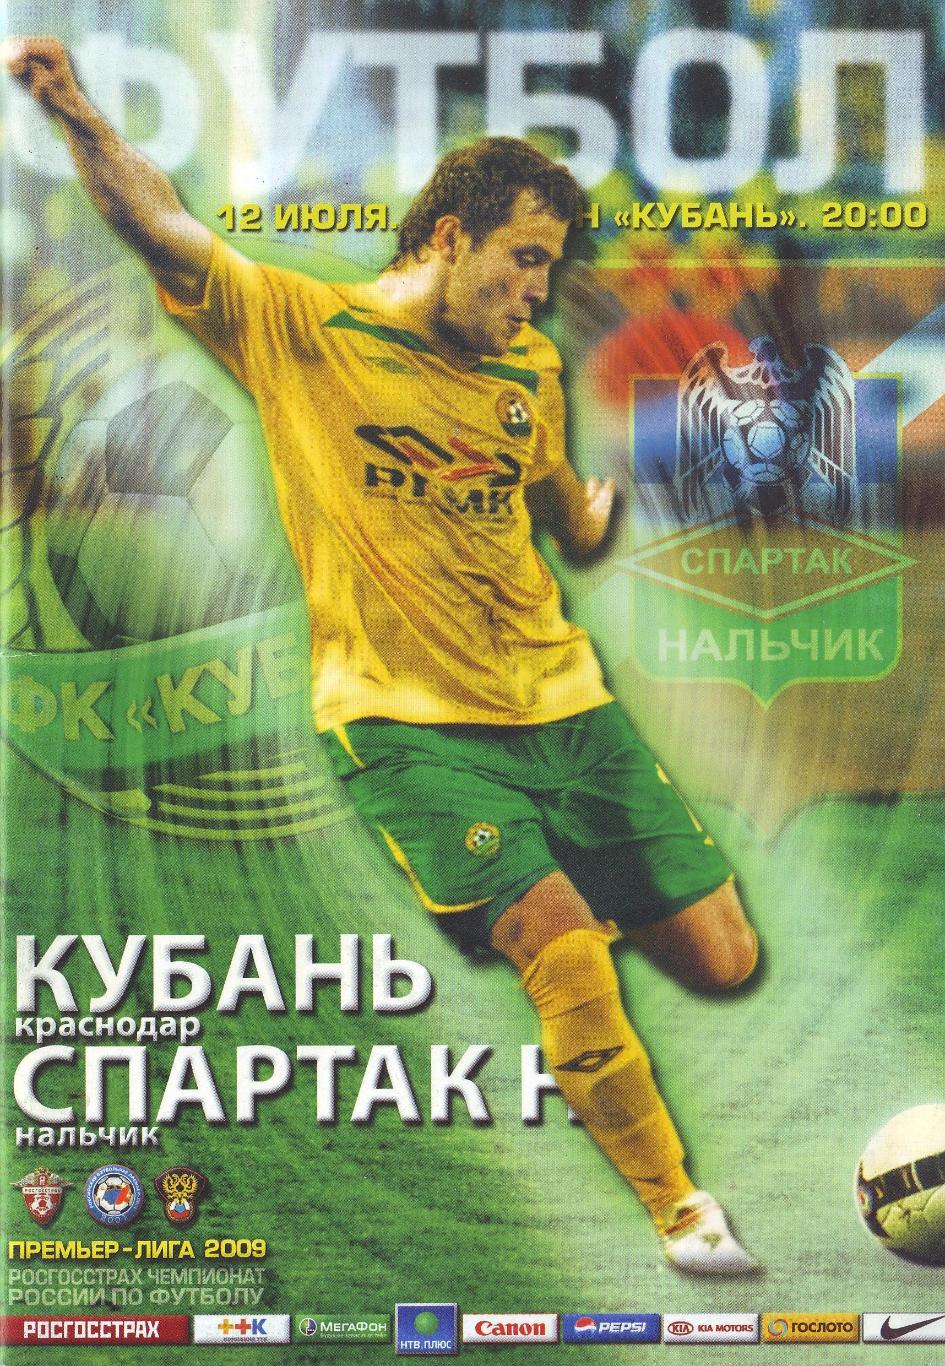 Кубань Краснодар - Спартак Нальчик 12.07.2009